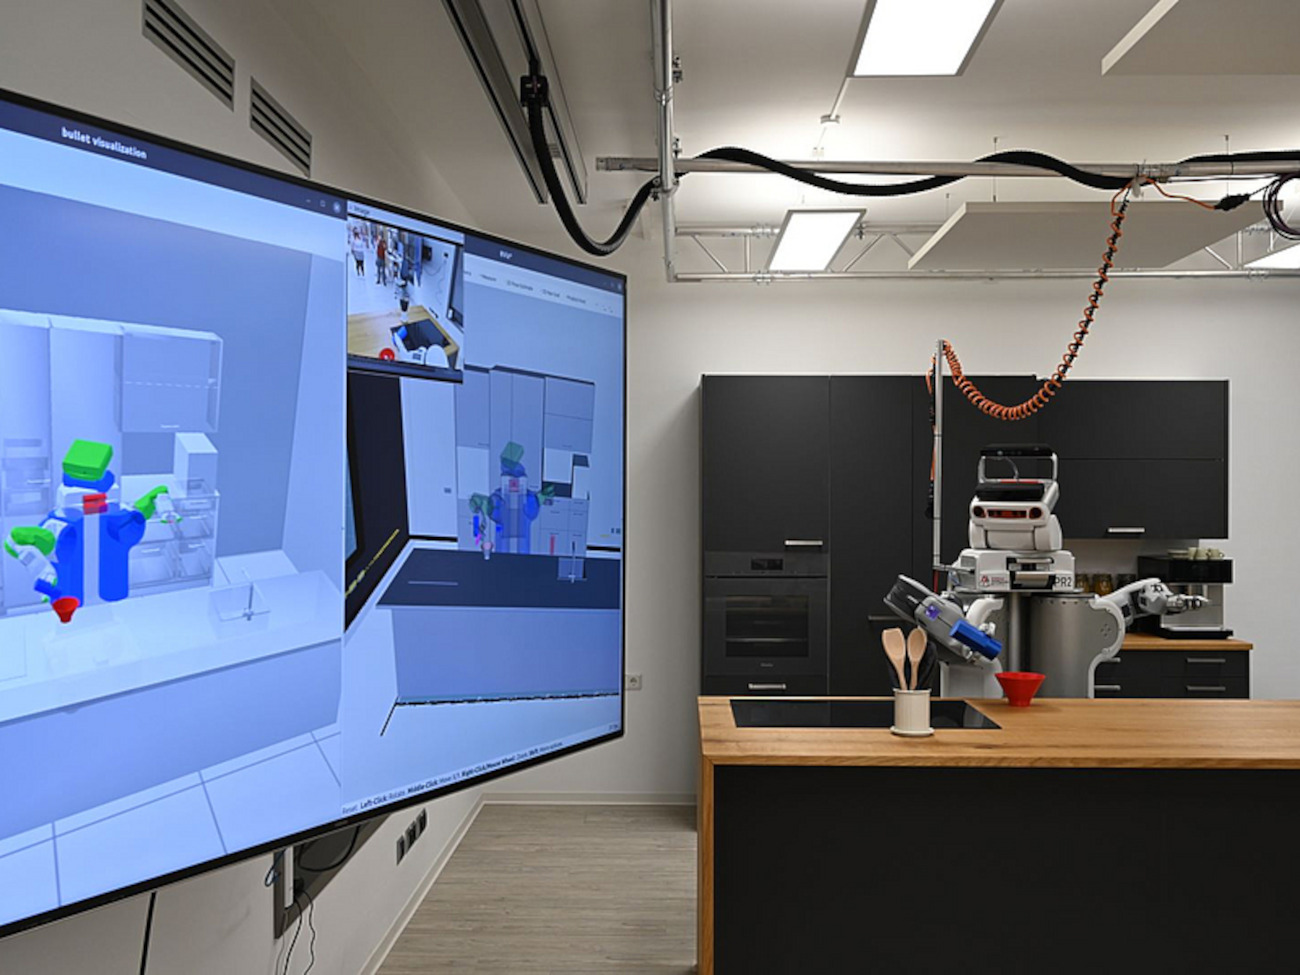 Ein Roboter arbeitet in einem Labor, das mit einer Küche eingerichtet ist